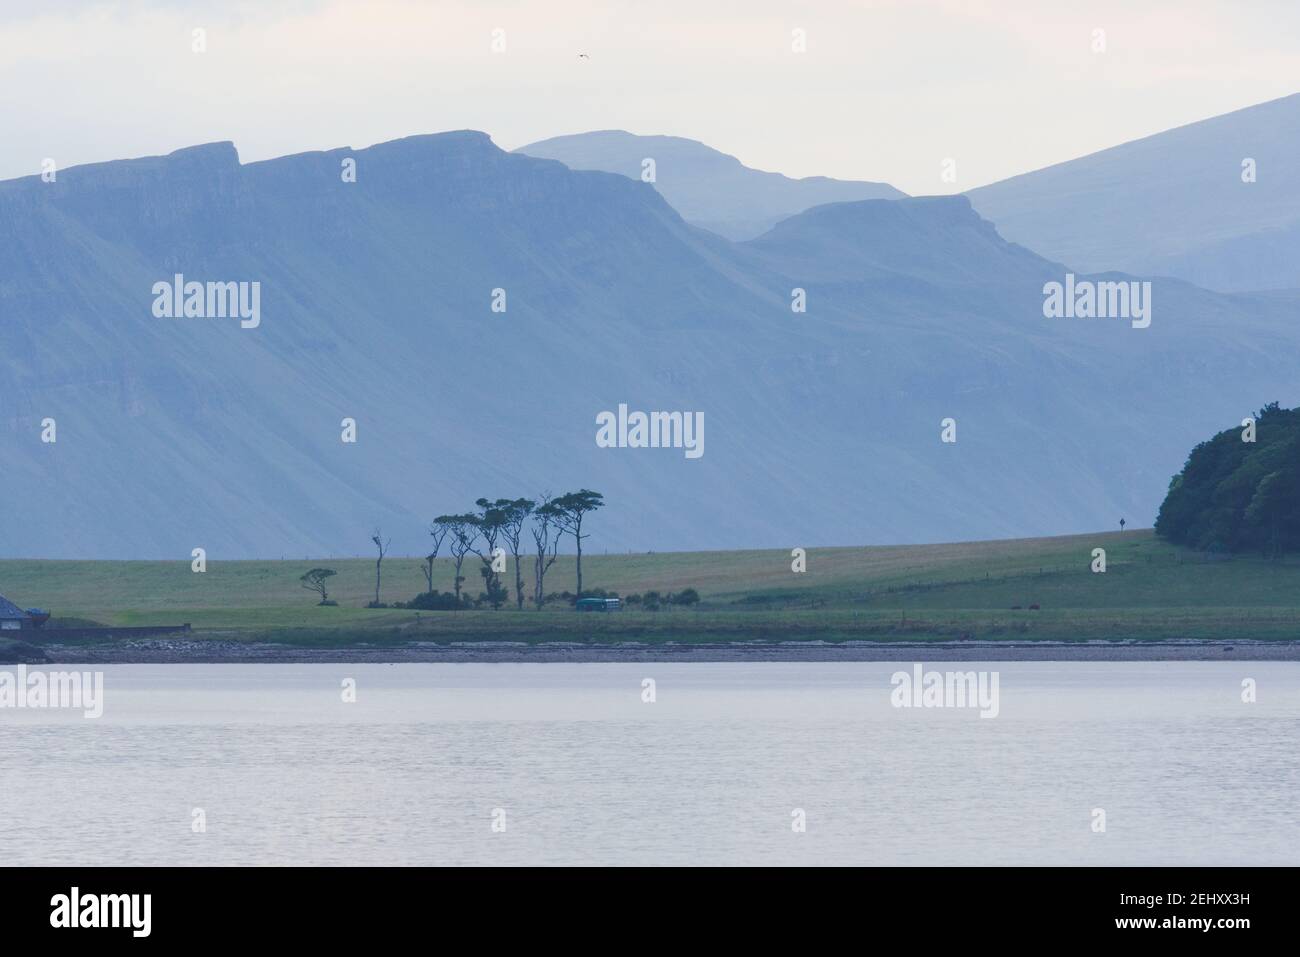 Falaises côtières écossaises spectaculaires, faisant partie d'un téléobjectif derrière un groupe d'arbres insolites sur l'île de raasay. Ton bleu et vert. Banque D'Images